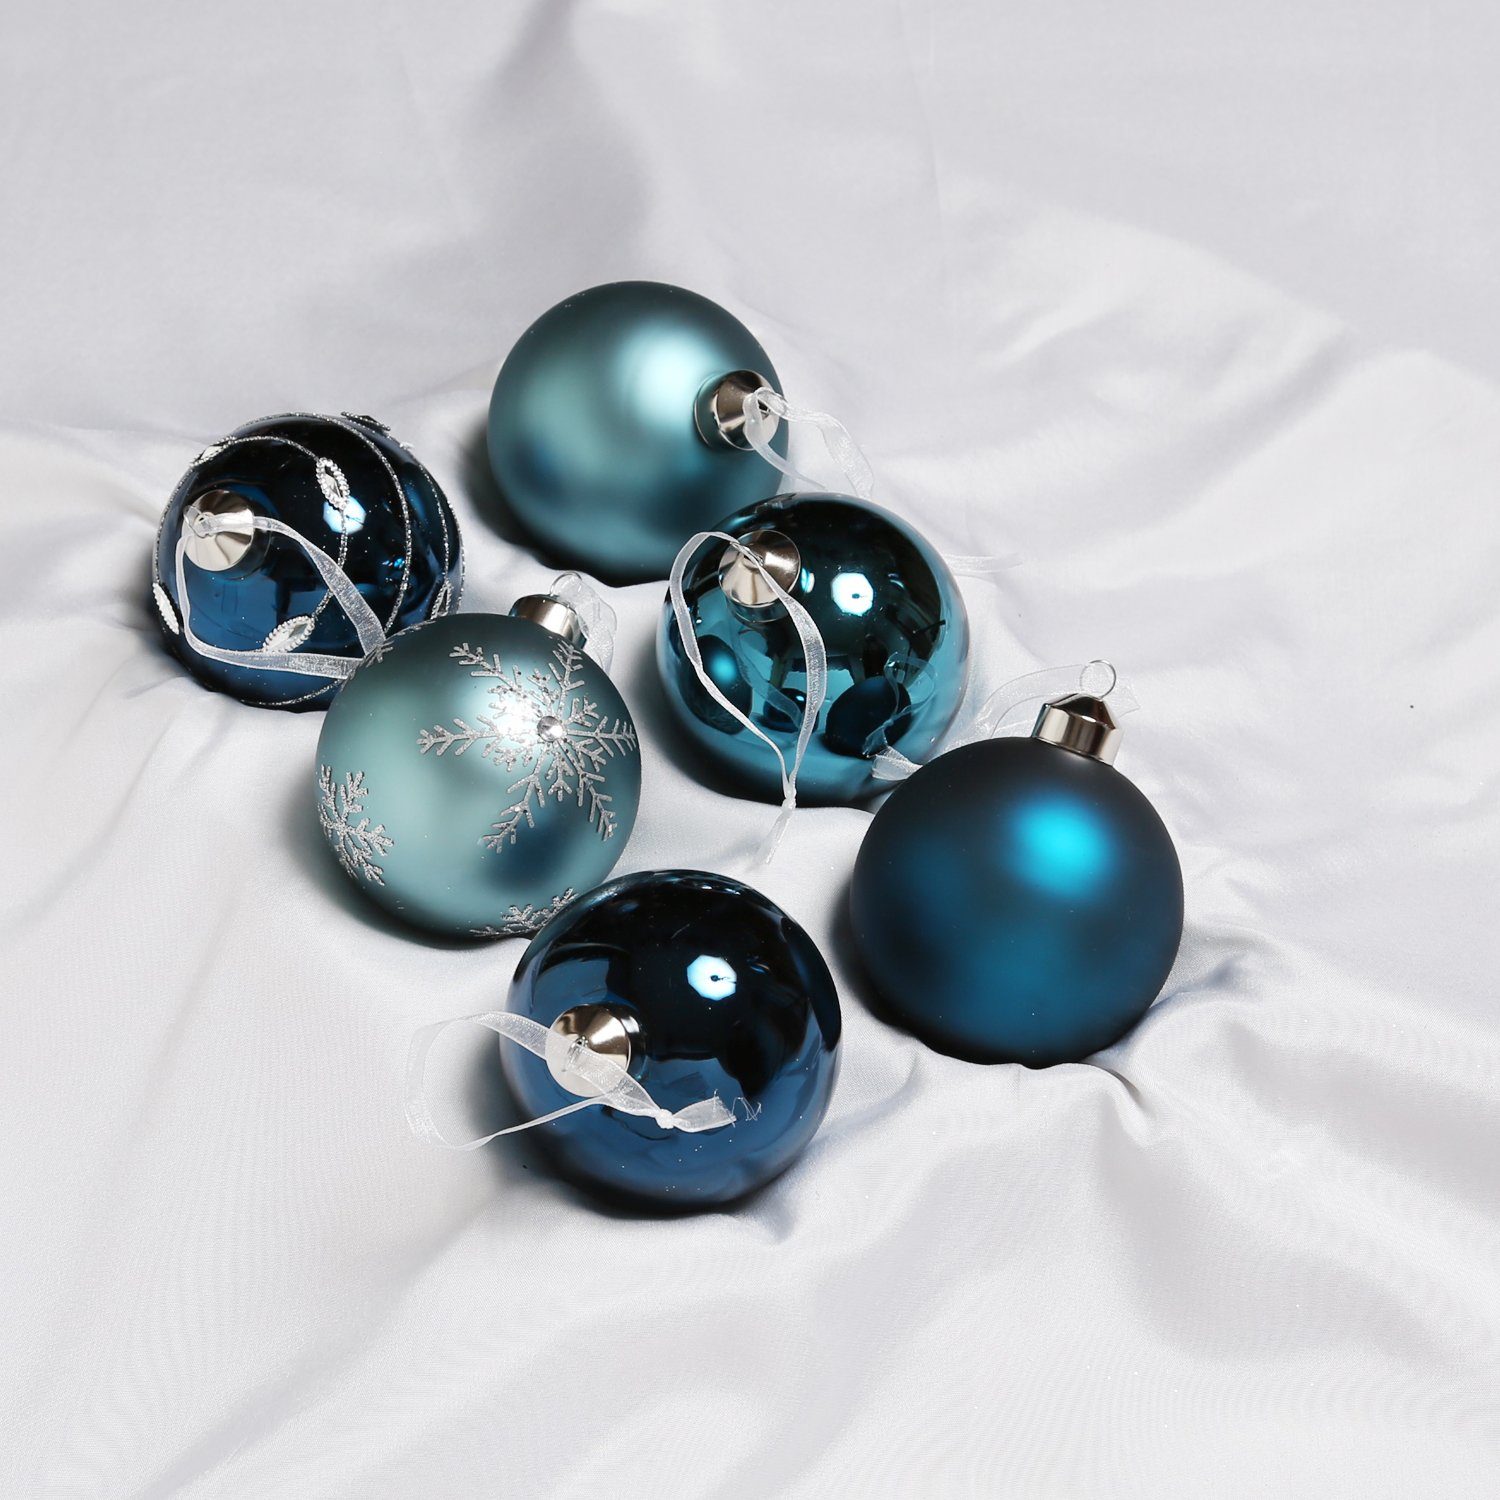 MARELIDA Weihnachtsbaumkugel Christbaumkugel Weihnachtskugel Glas D:8cm glänzend matt blau 6er Set (6 St)